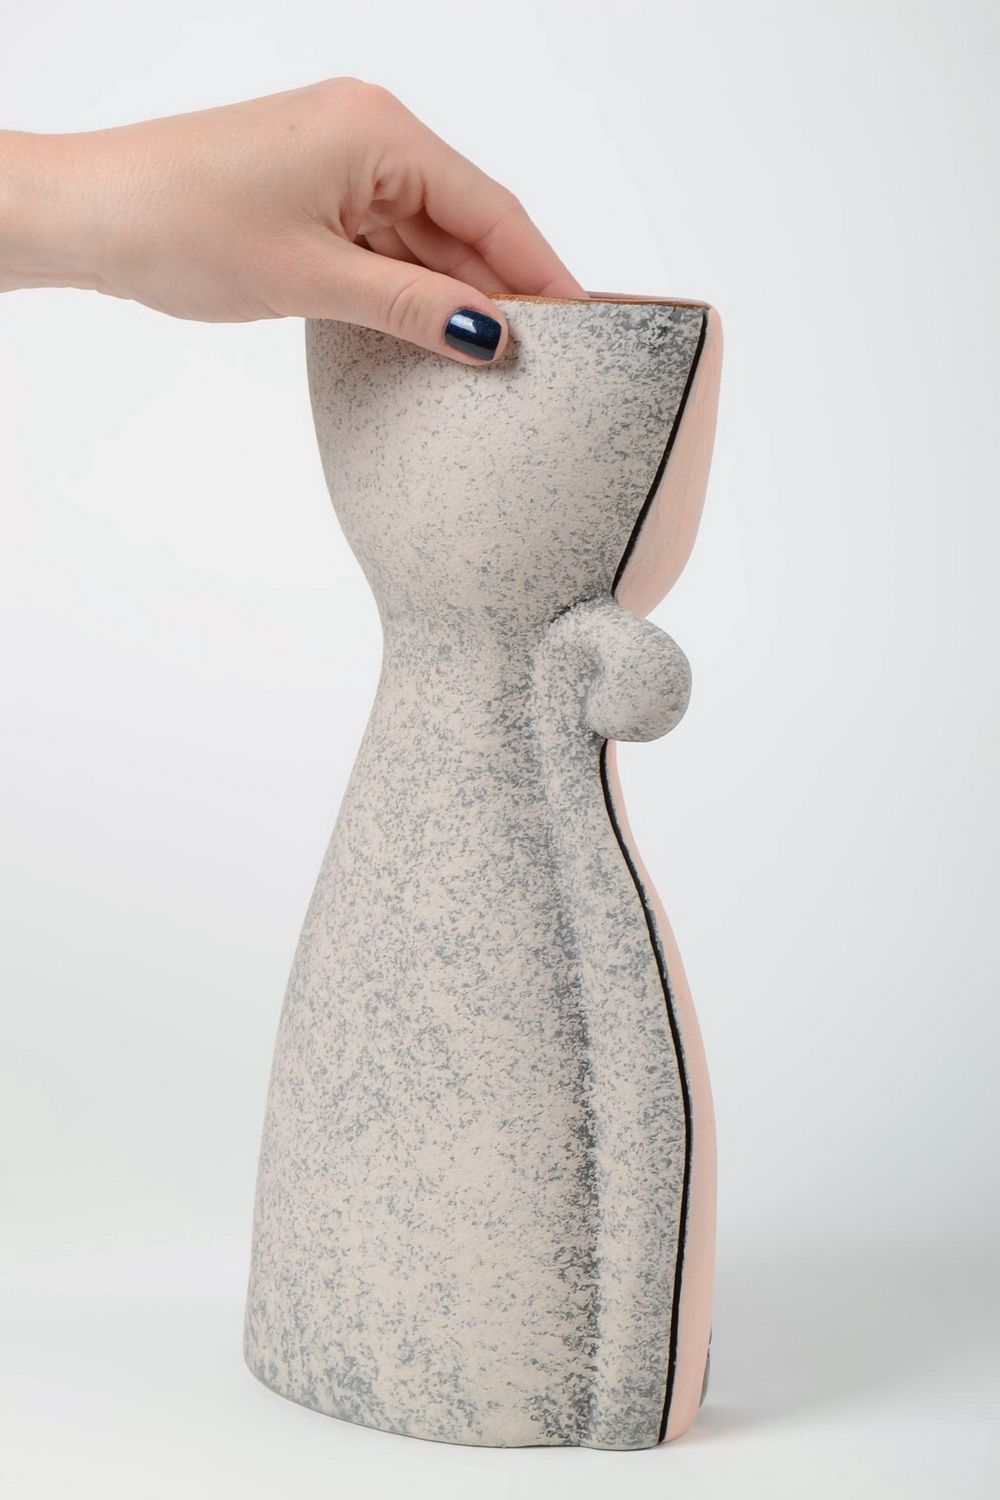 Ungewöhnliche dekorative Vase aus Ton für Dekor 2.5 Liter groß handgeschaffen foto 5